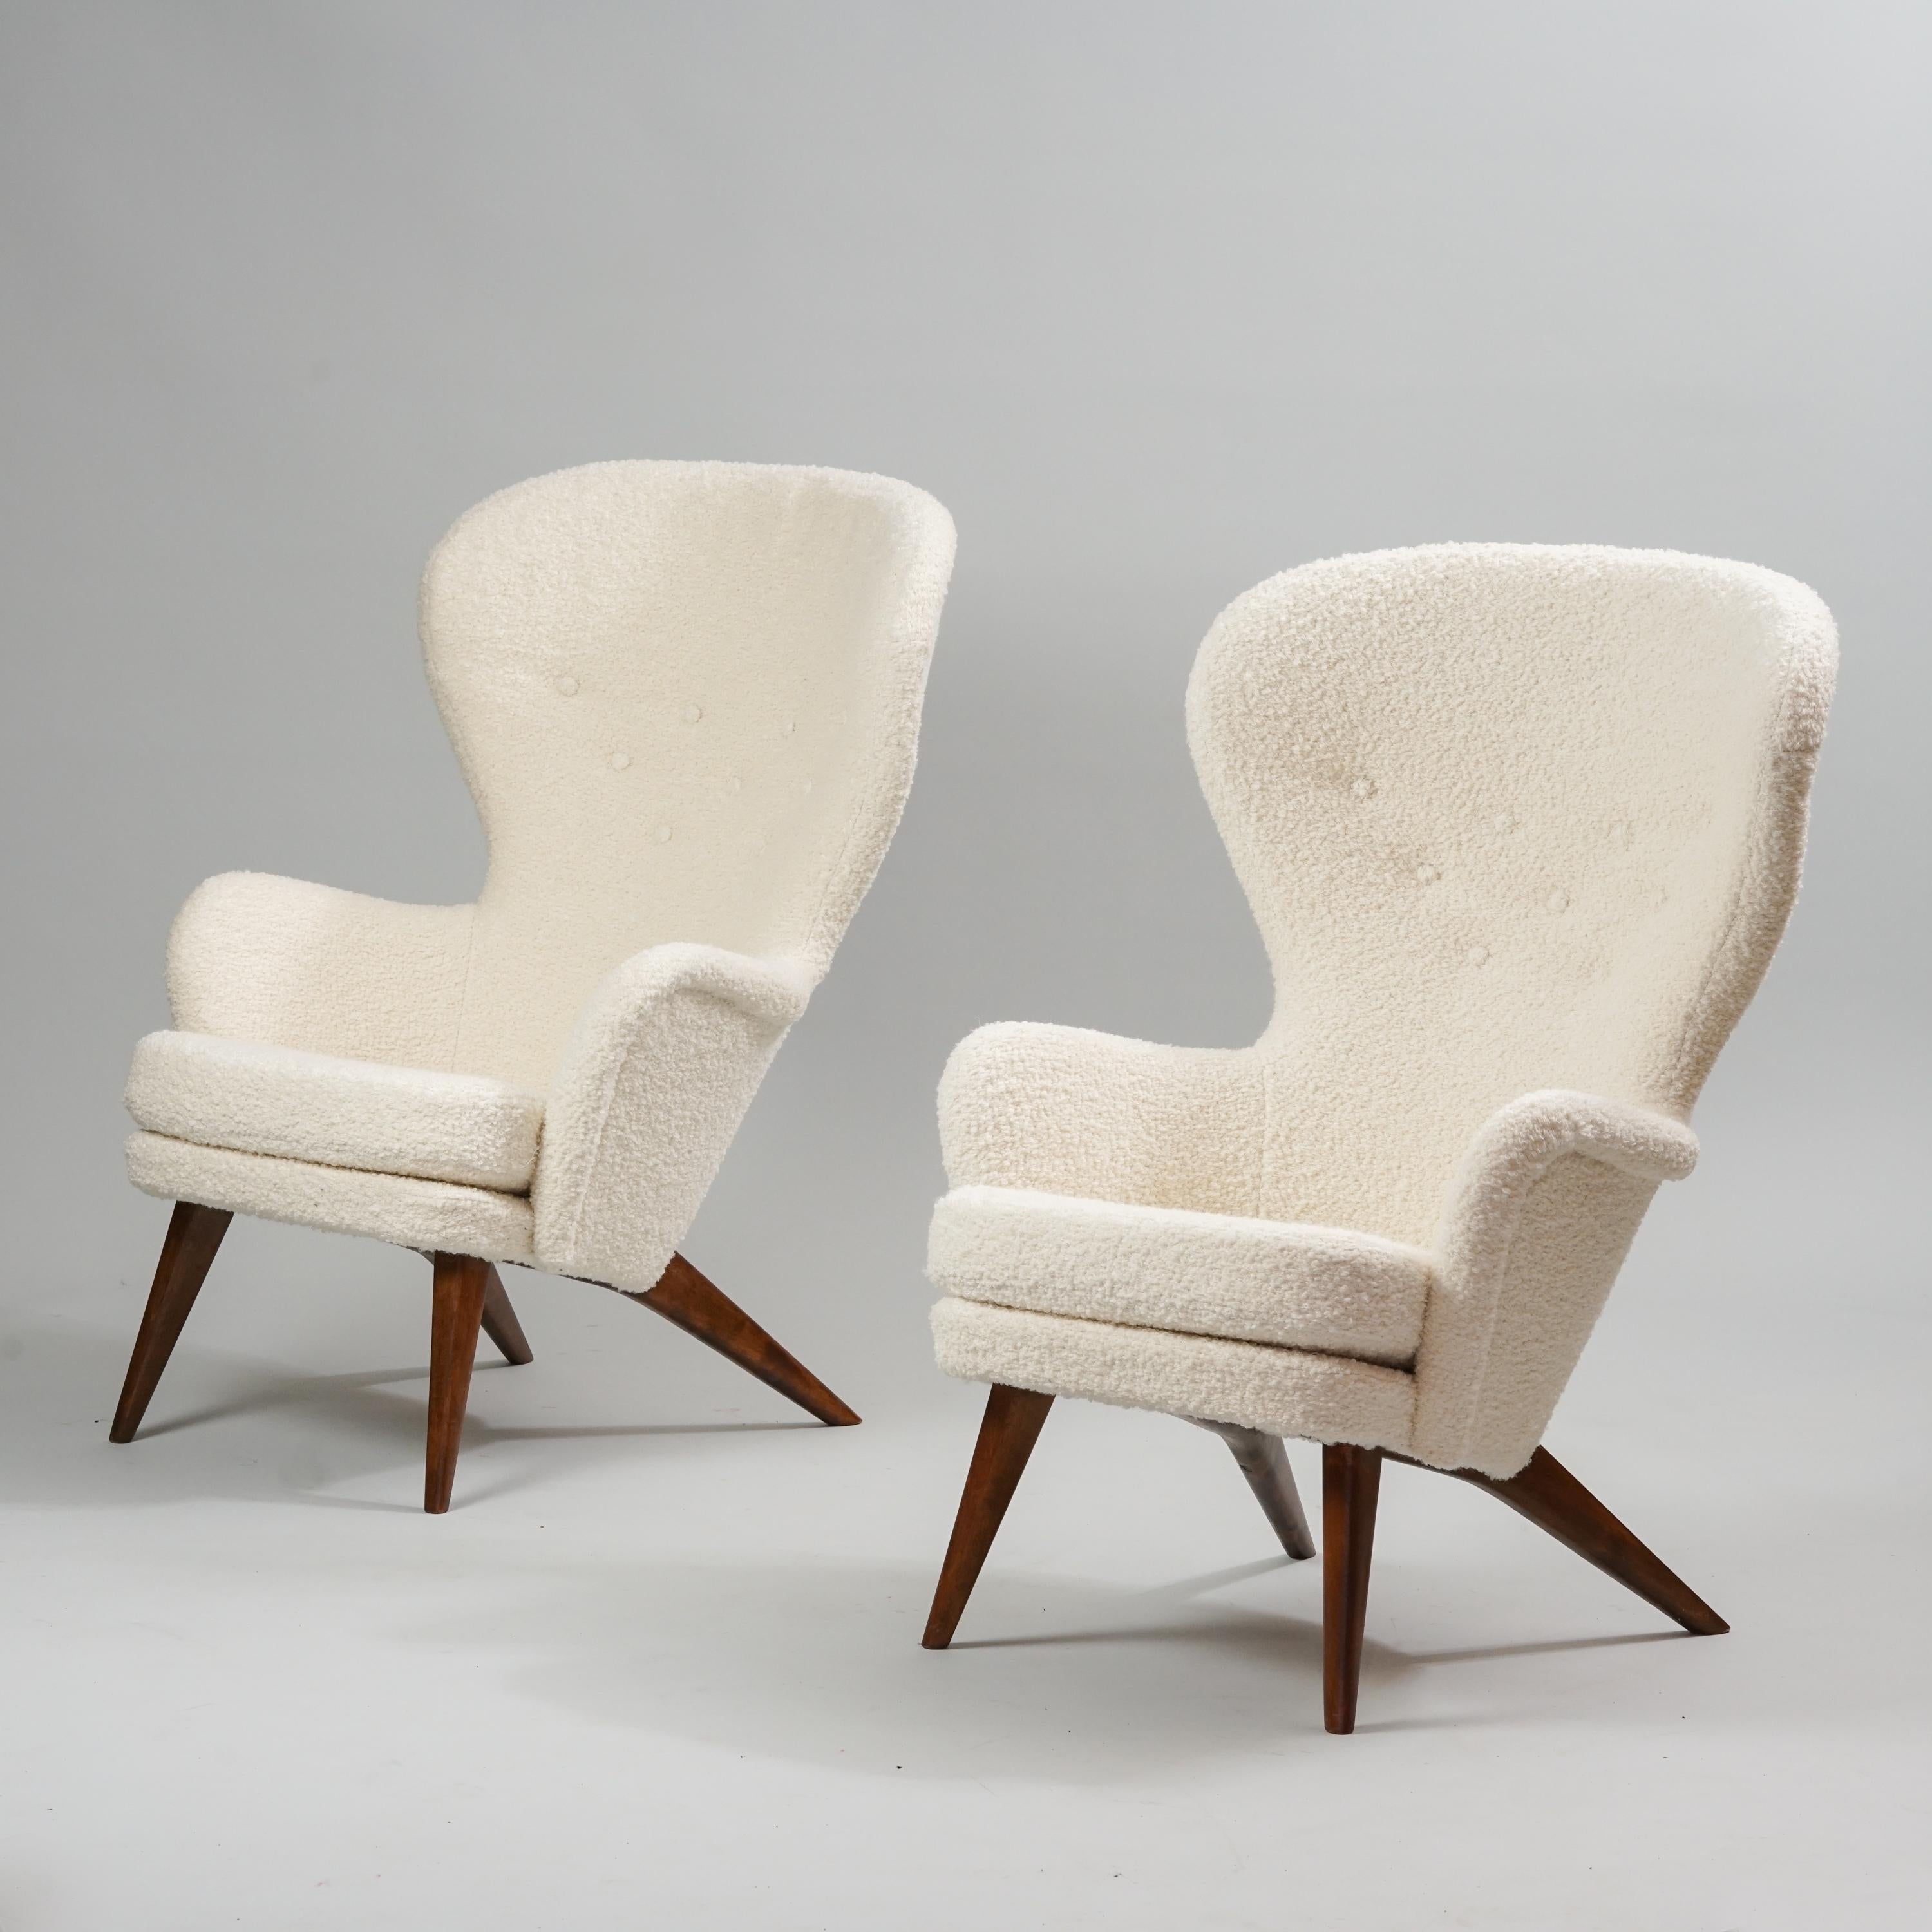 Conjunto de dos sillones modelo Siesta, diseñados por Carl Gustaf Hiort af Ornäs, fabricados por Hiort Tuote, década de 1950. Marcado. Patas de abedul teñido. Retapizado con tejido de calidad 